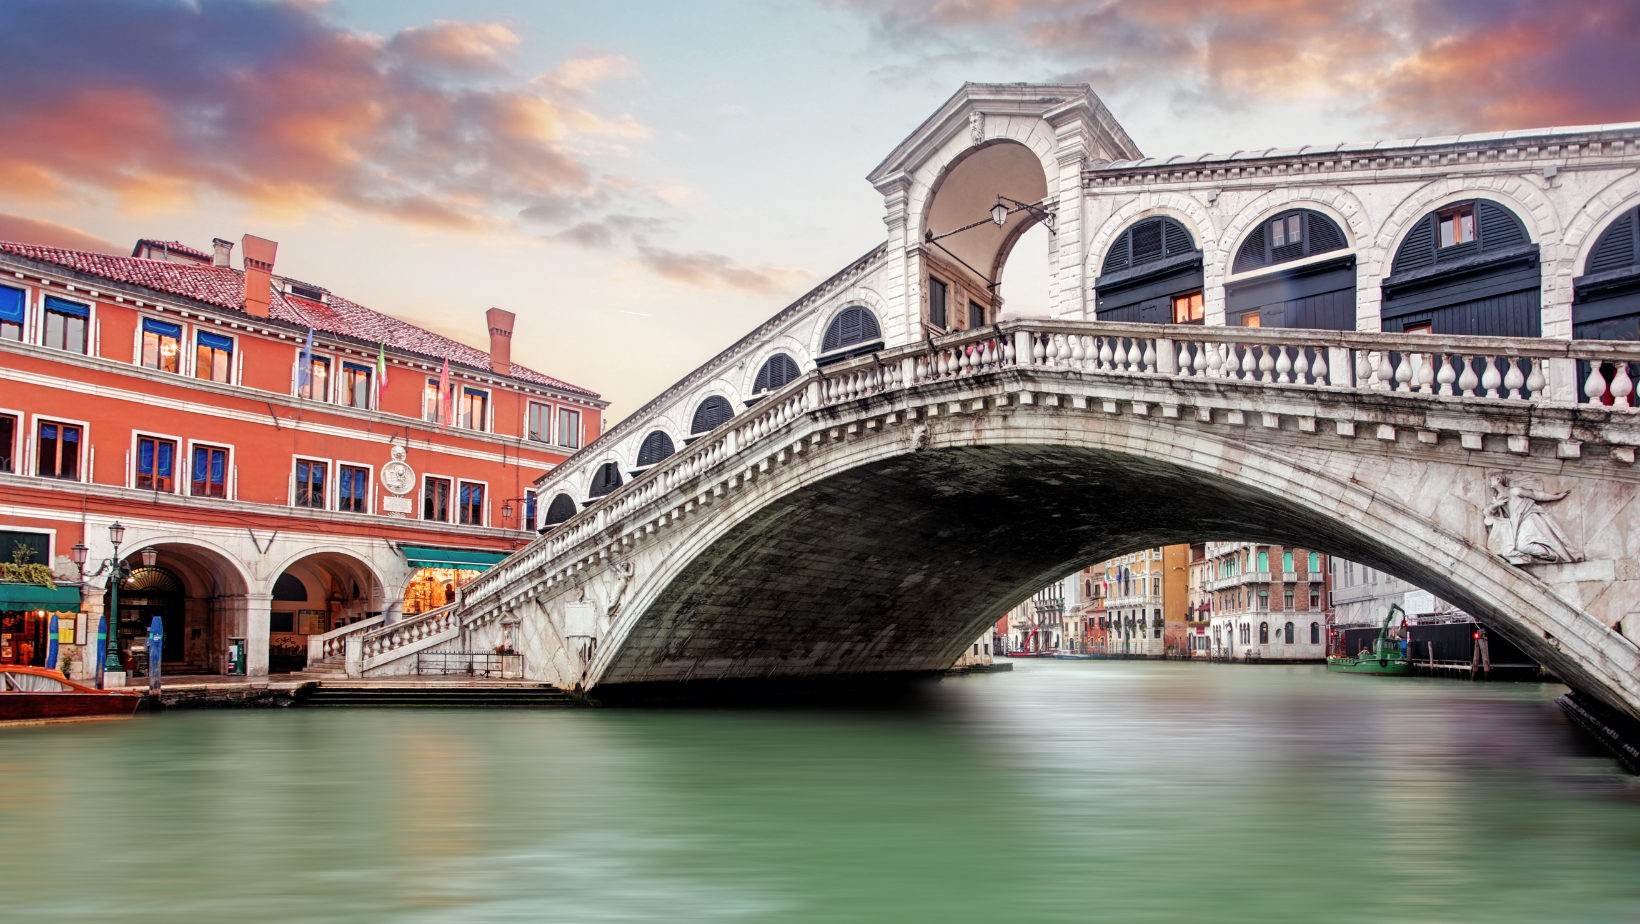 הגשר המפורסם של ונציה לצד בניינים צבעוניים